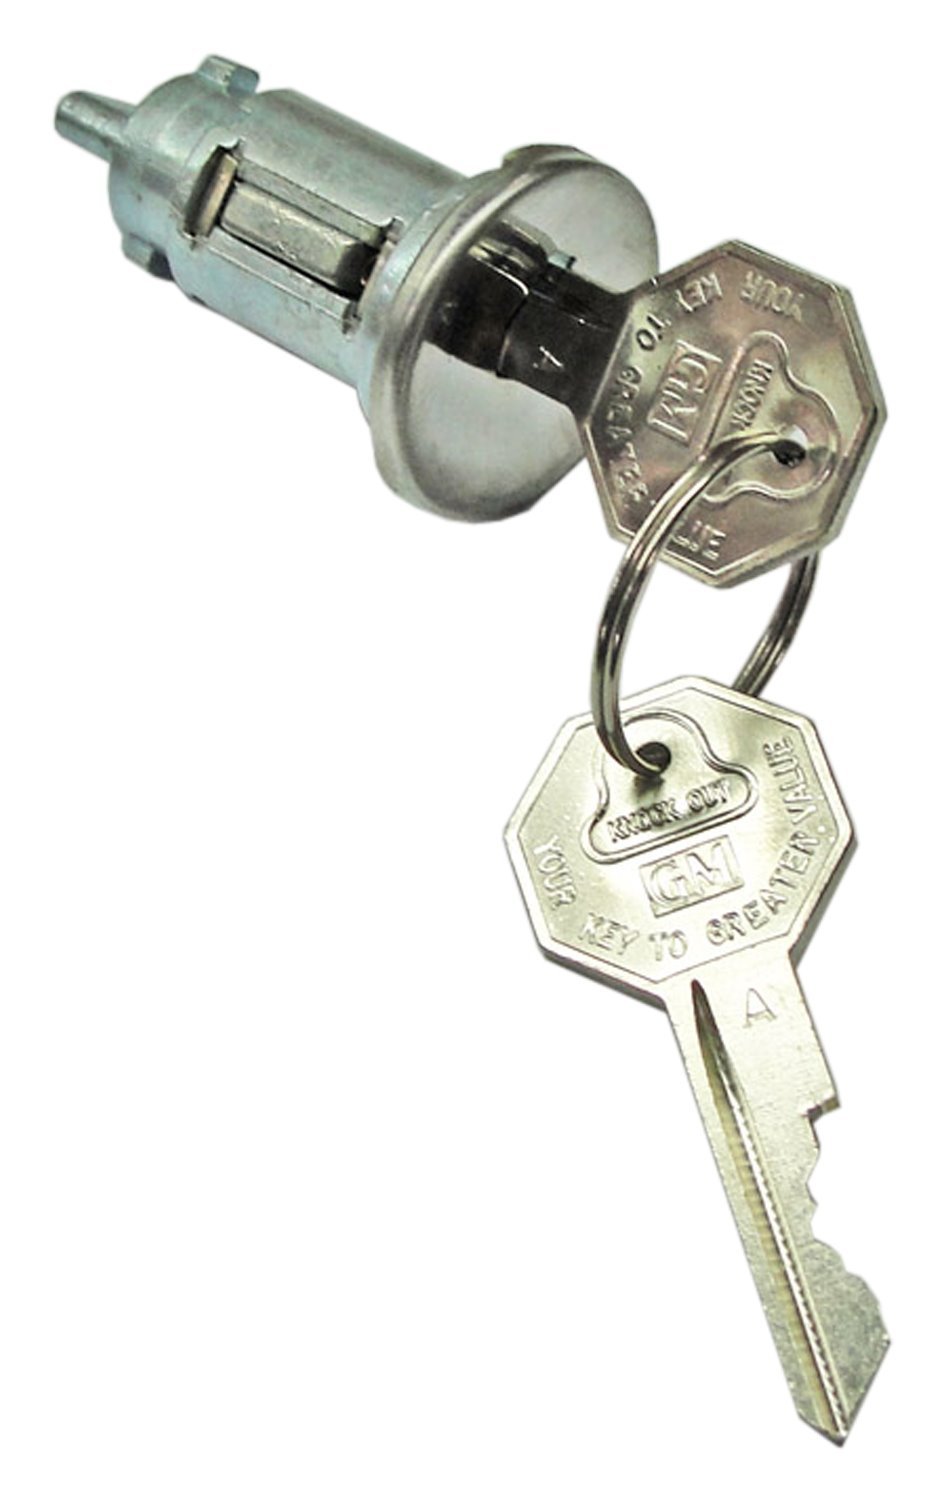 Ignition Lock Set Fits Select 1966-1972 GM Models [Original Octagon Keys]